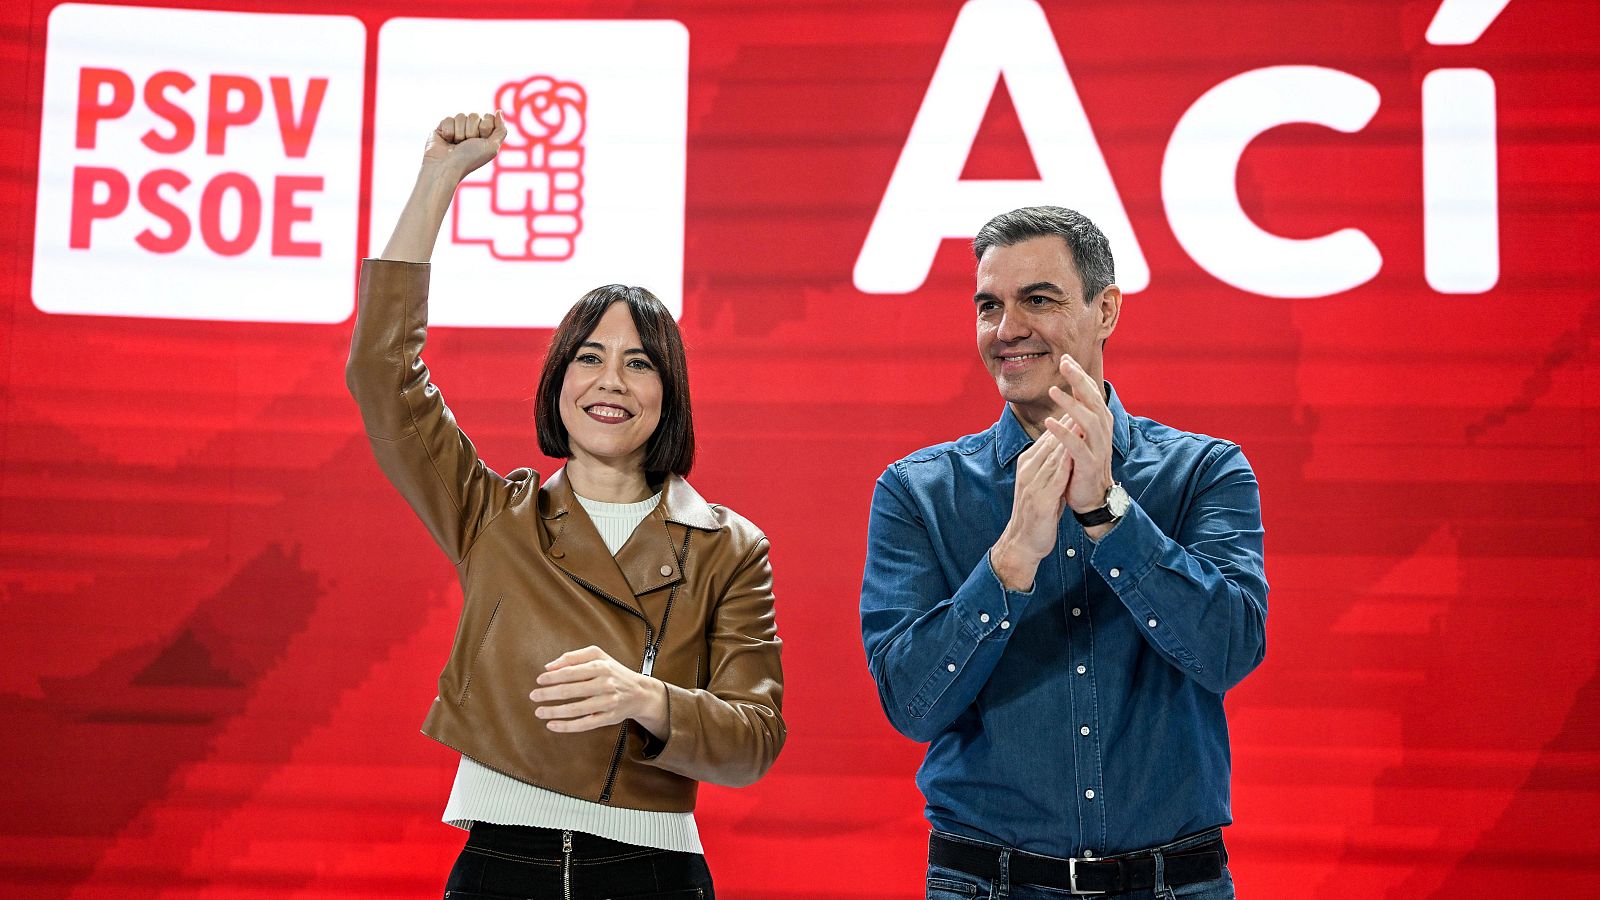 PSPV-PSOE: Pedro Sánchez respalda a Diana Morant como nueva líder